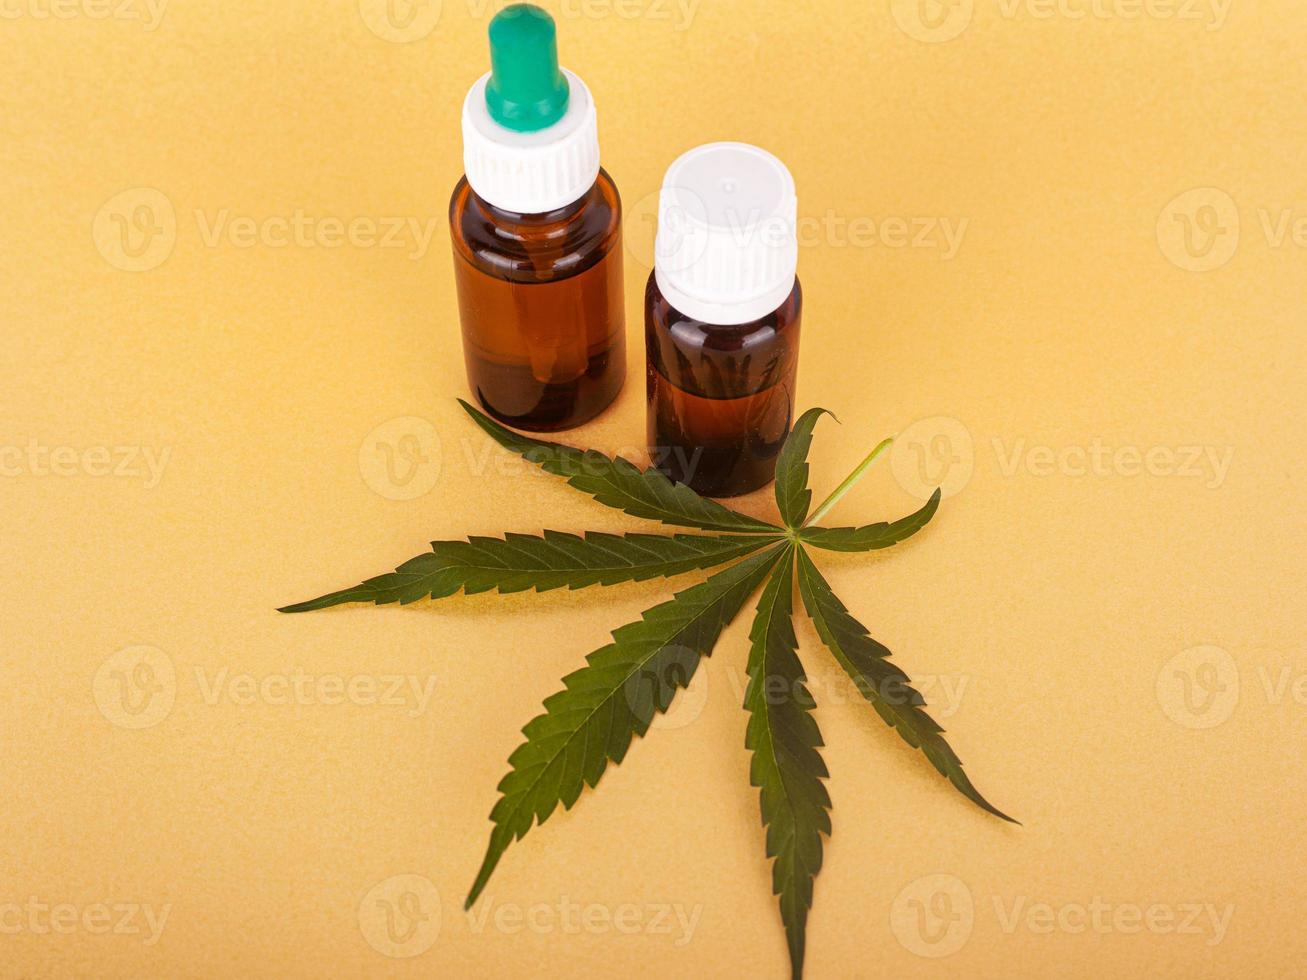 extrair óleo de cannabis medicinal, elixir de ervas e remédio natural para estresse e doenças foto